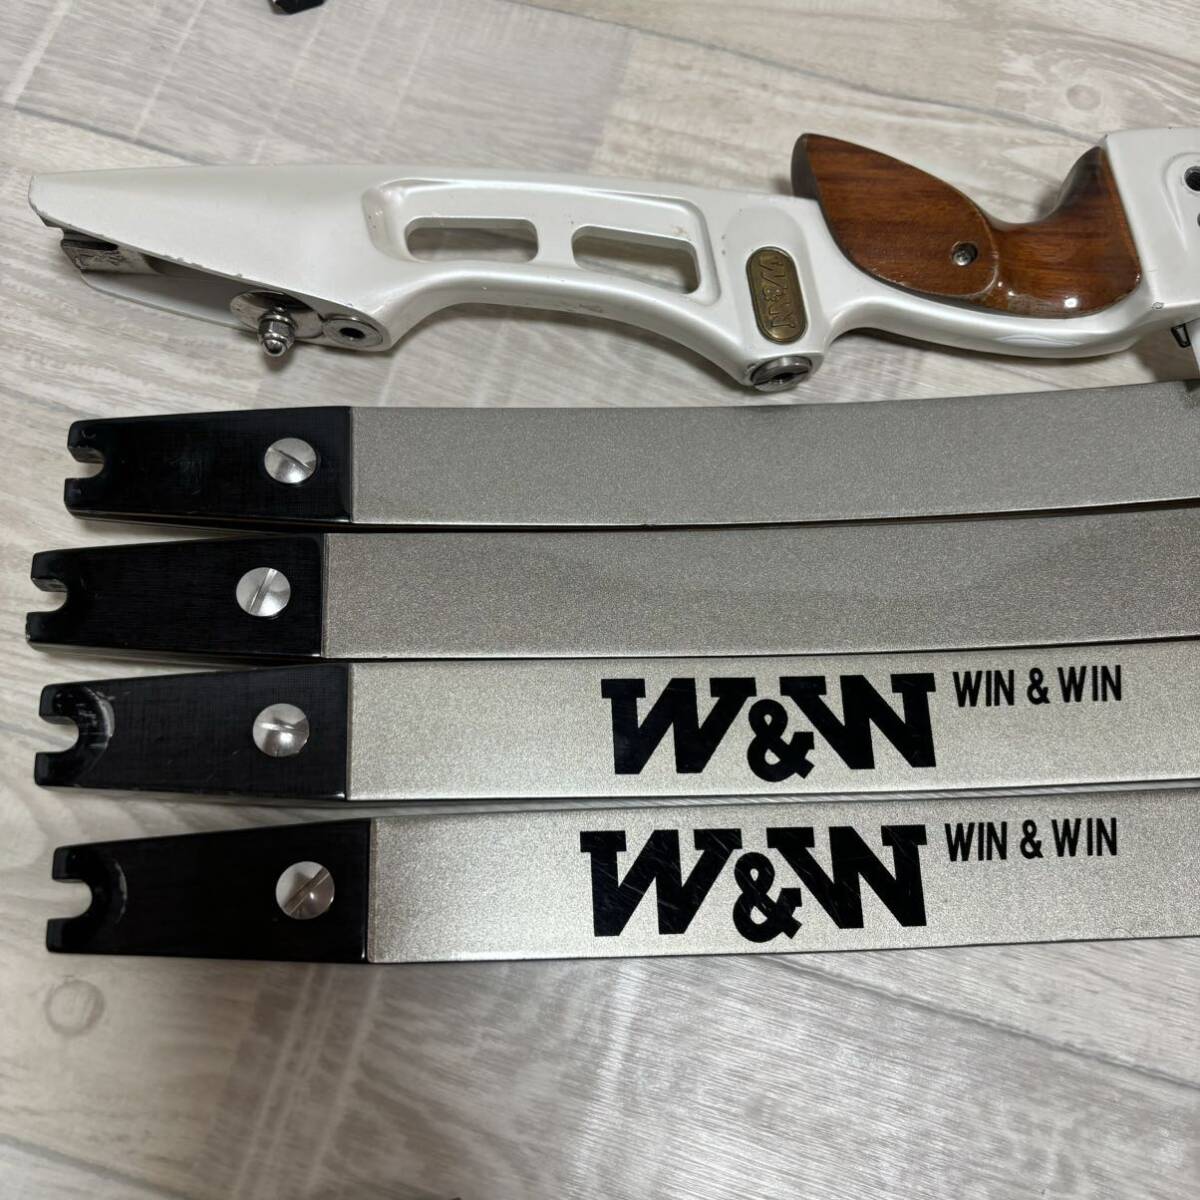 W&W/WIN&WIN archery steering wheel complete set case attaching 